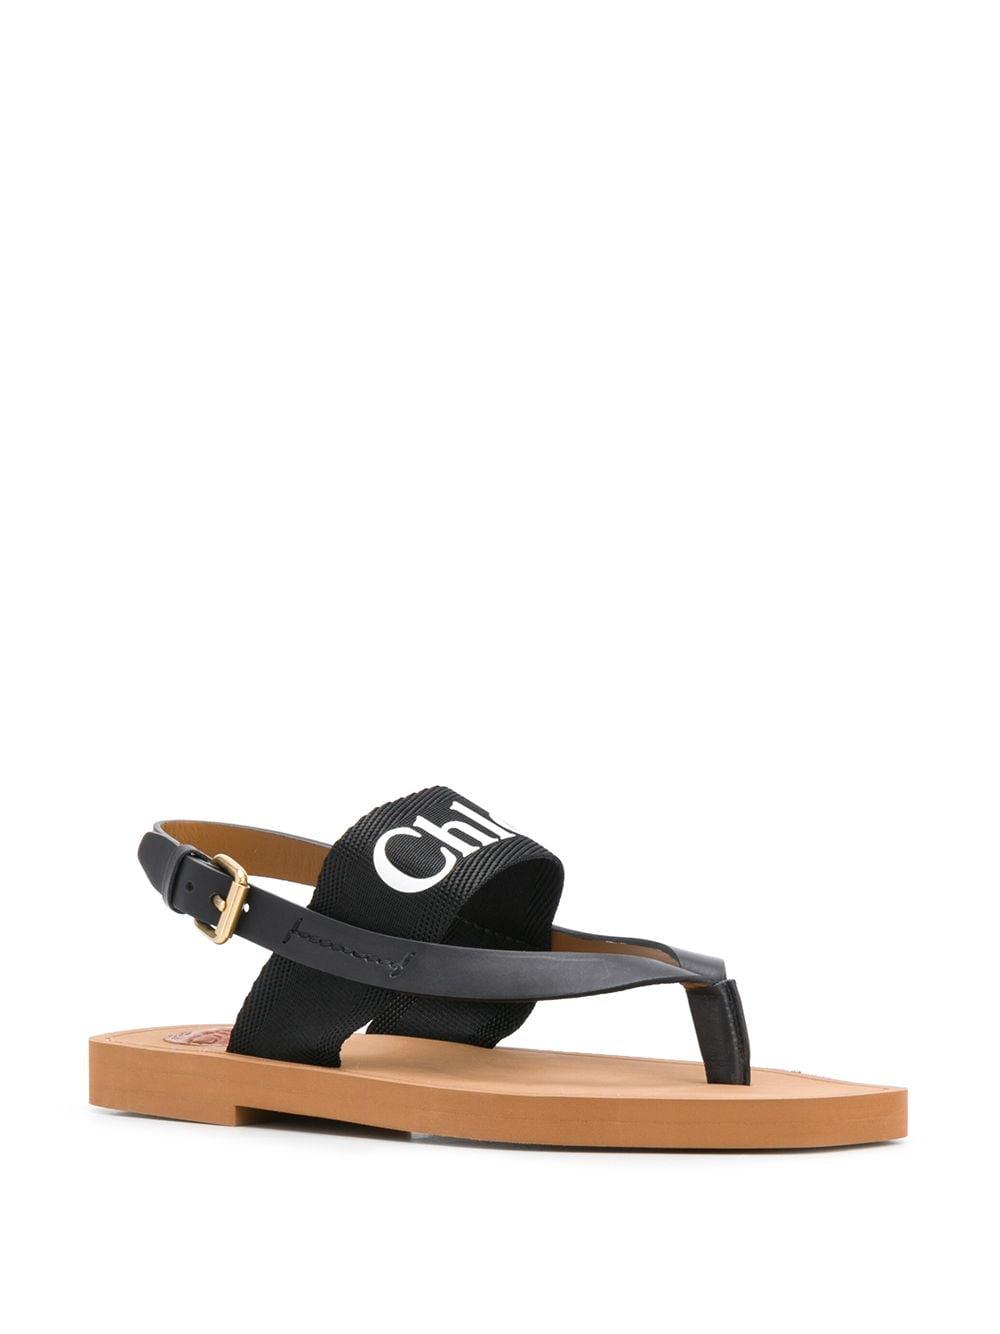 Chloé Woody Logo Strap Sandals in Black - Lyst